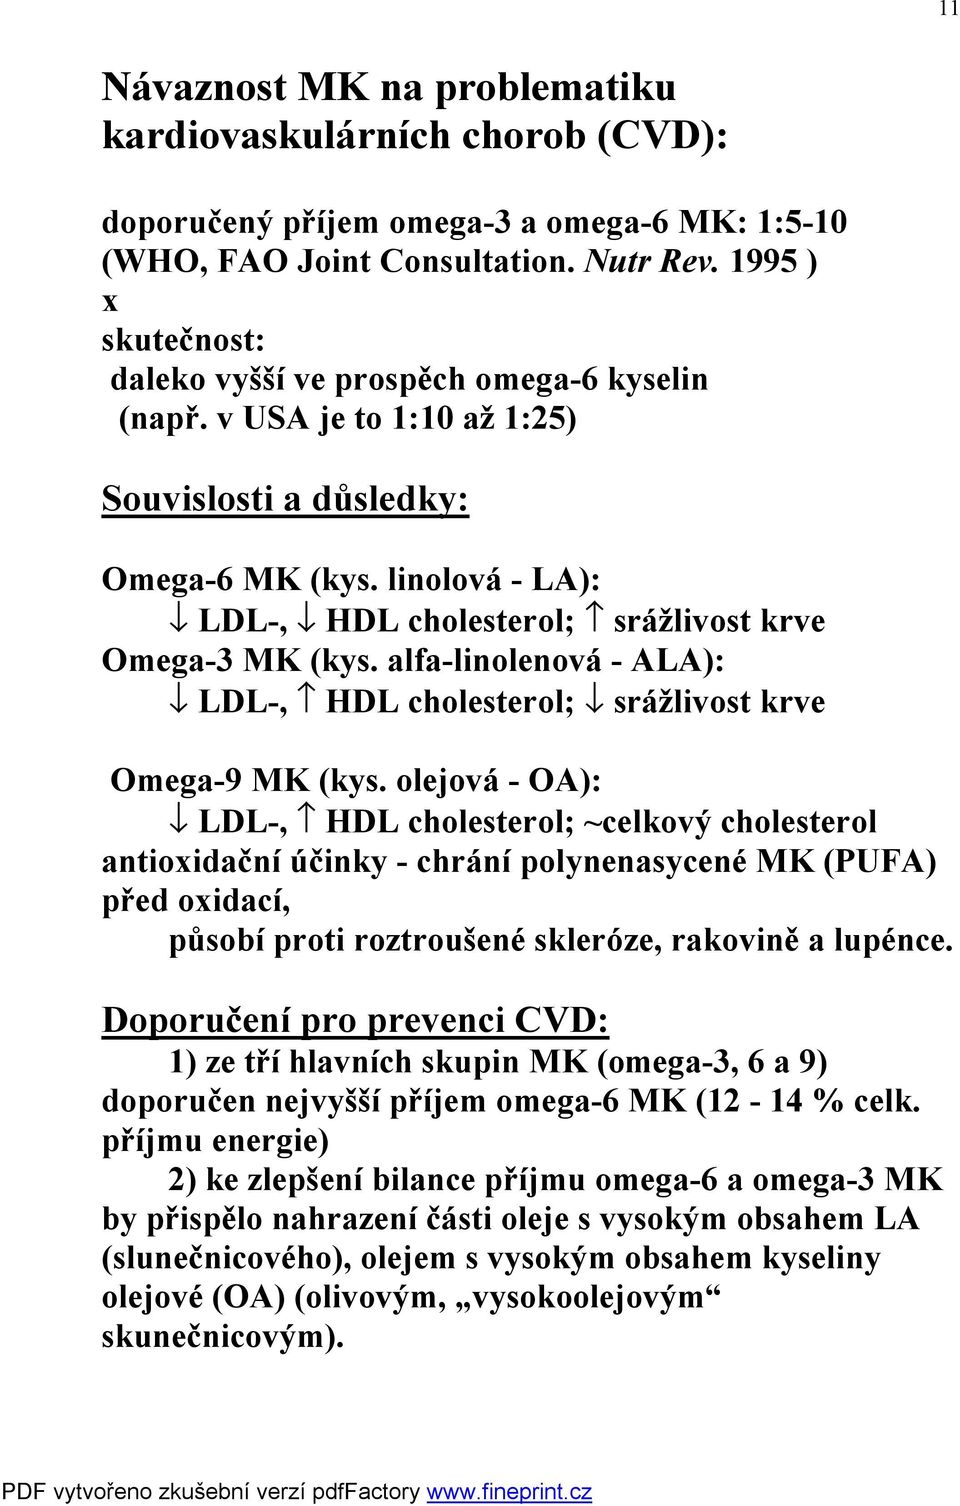 linolová - LA): fl LDL-, fl HDL cholesterol; srážlivost krve Omega-3 MK (kys. alfa-linolenová - ALA): fl LDL-, HDL cholesterol; fl srážlivost krve Omega-9 MK (kys.